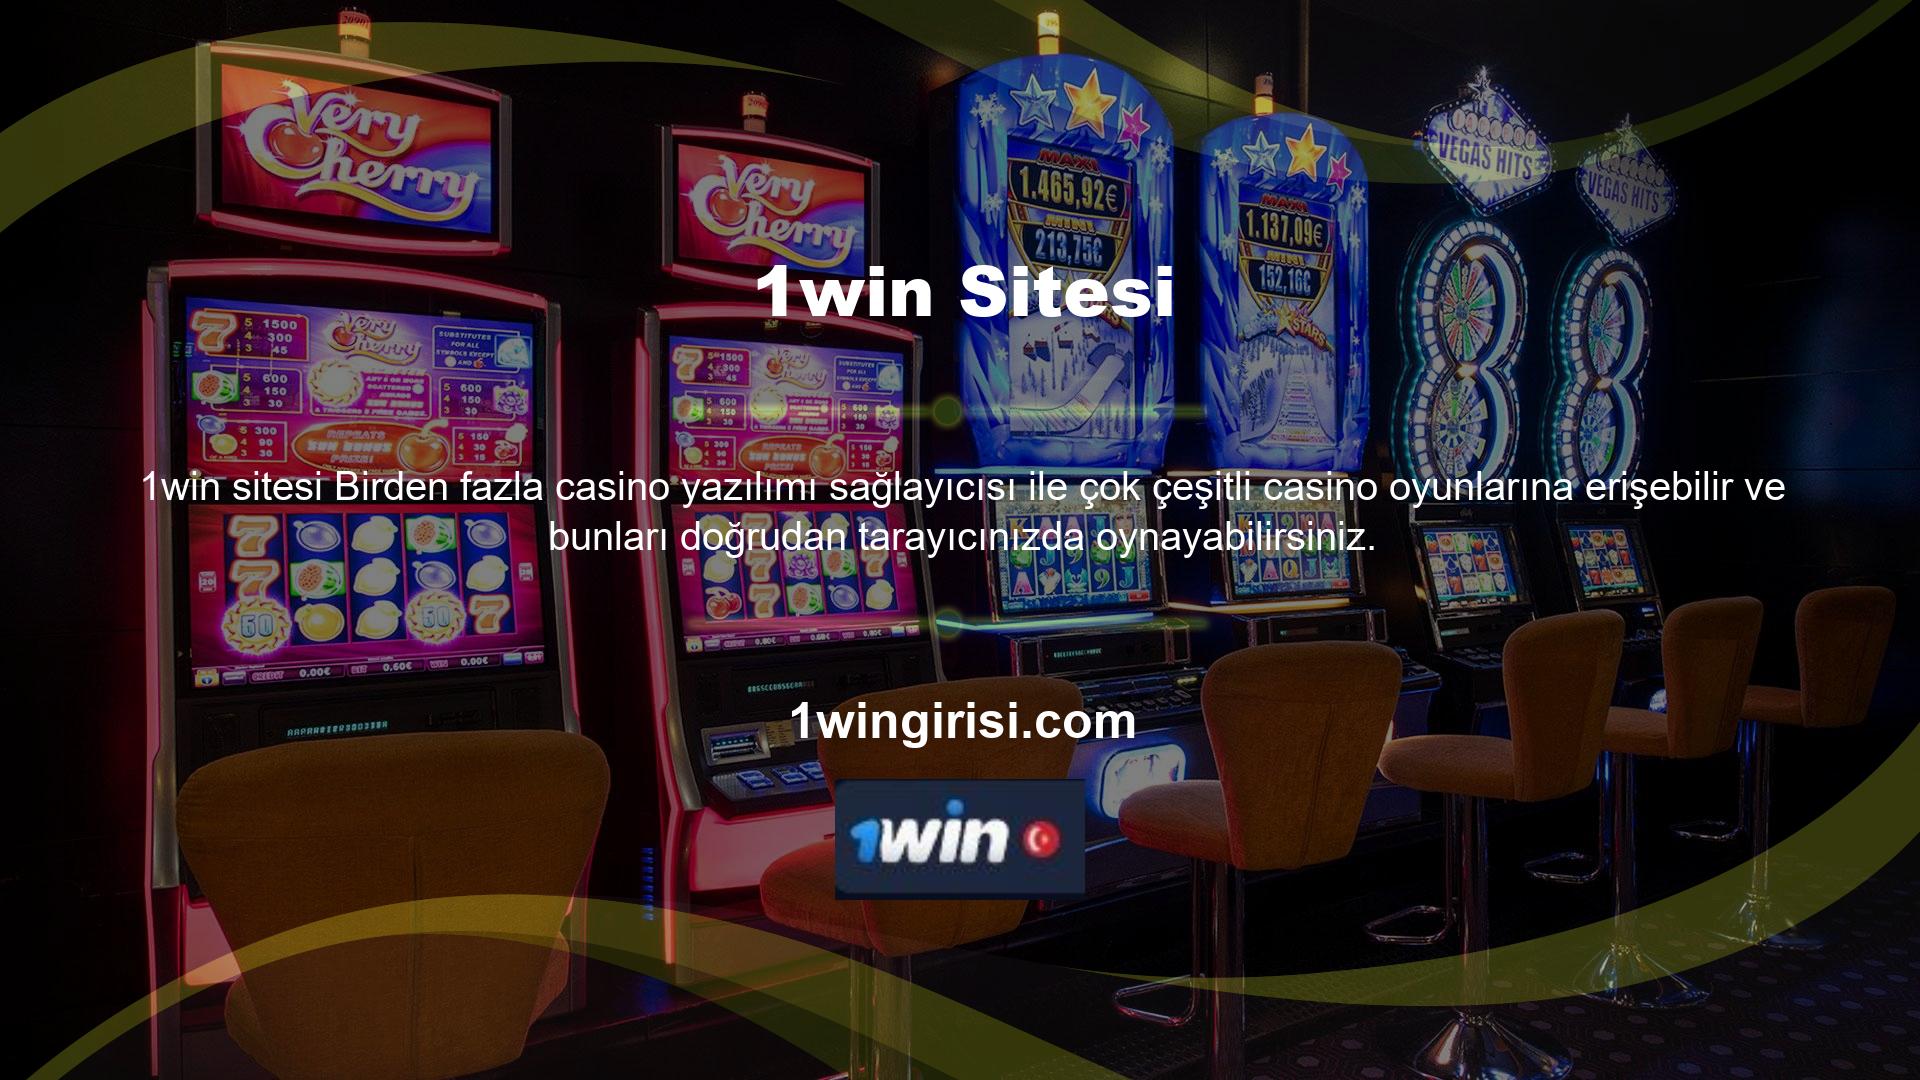 1win test ettik ve bu teklifin her beceri seviyesinden casino severler ve casino oyuncuları için gerçekten uygun olduğunu onayladık